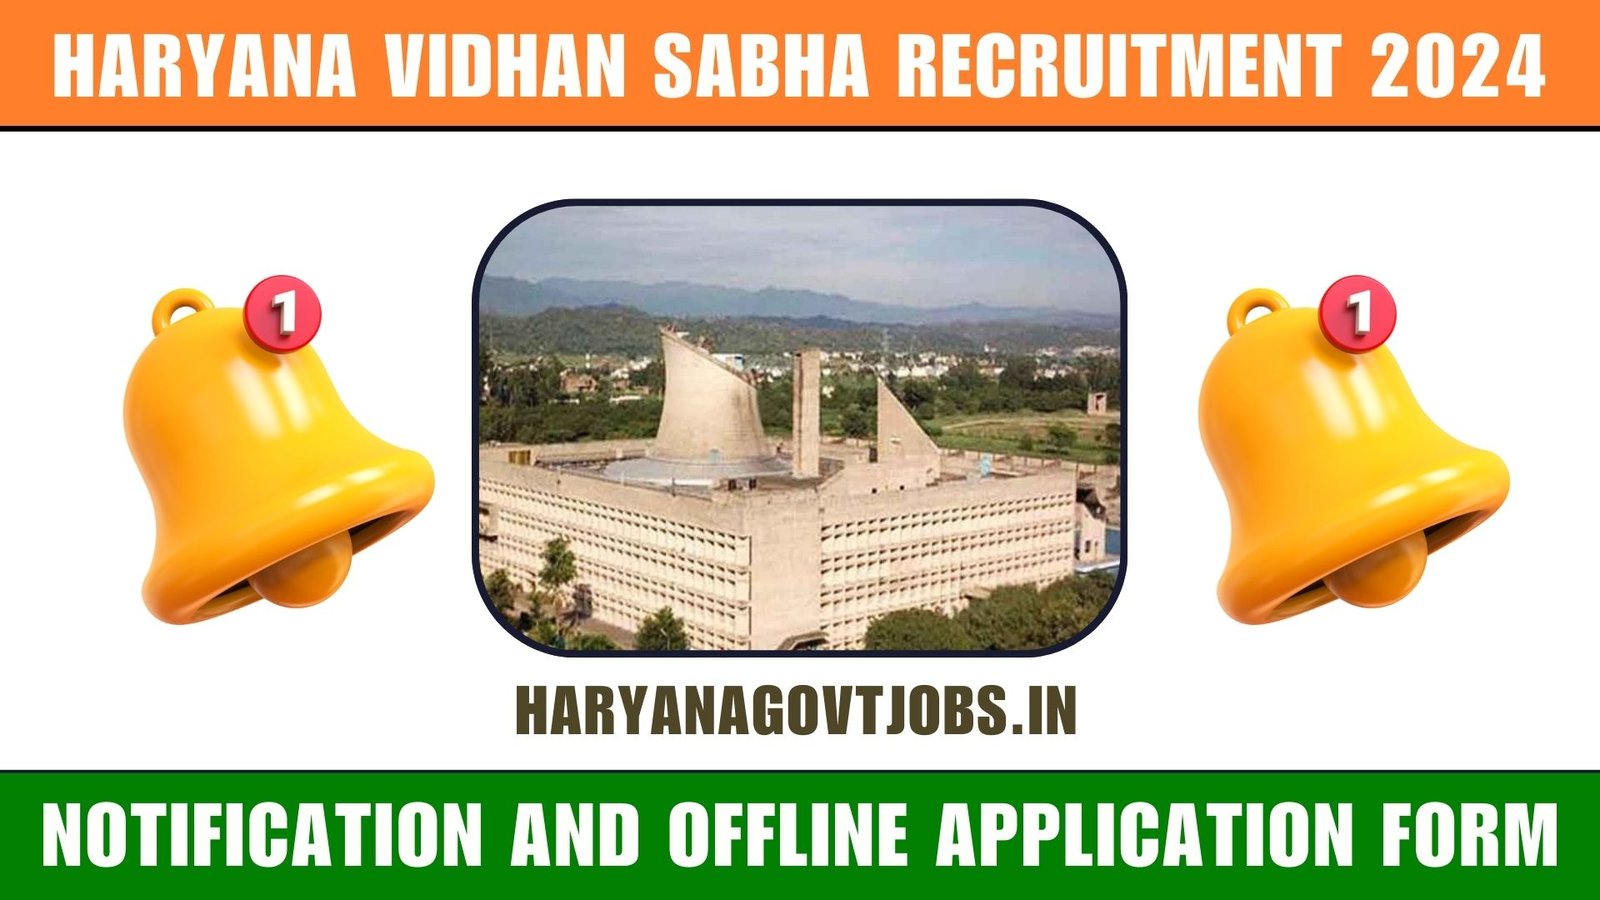 Haryana Vidhan Sabha Recruitment 2024 Overview